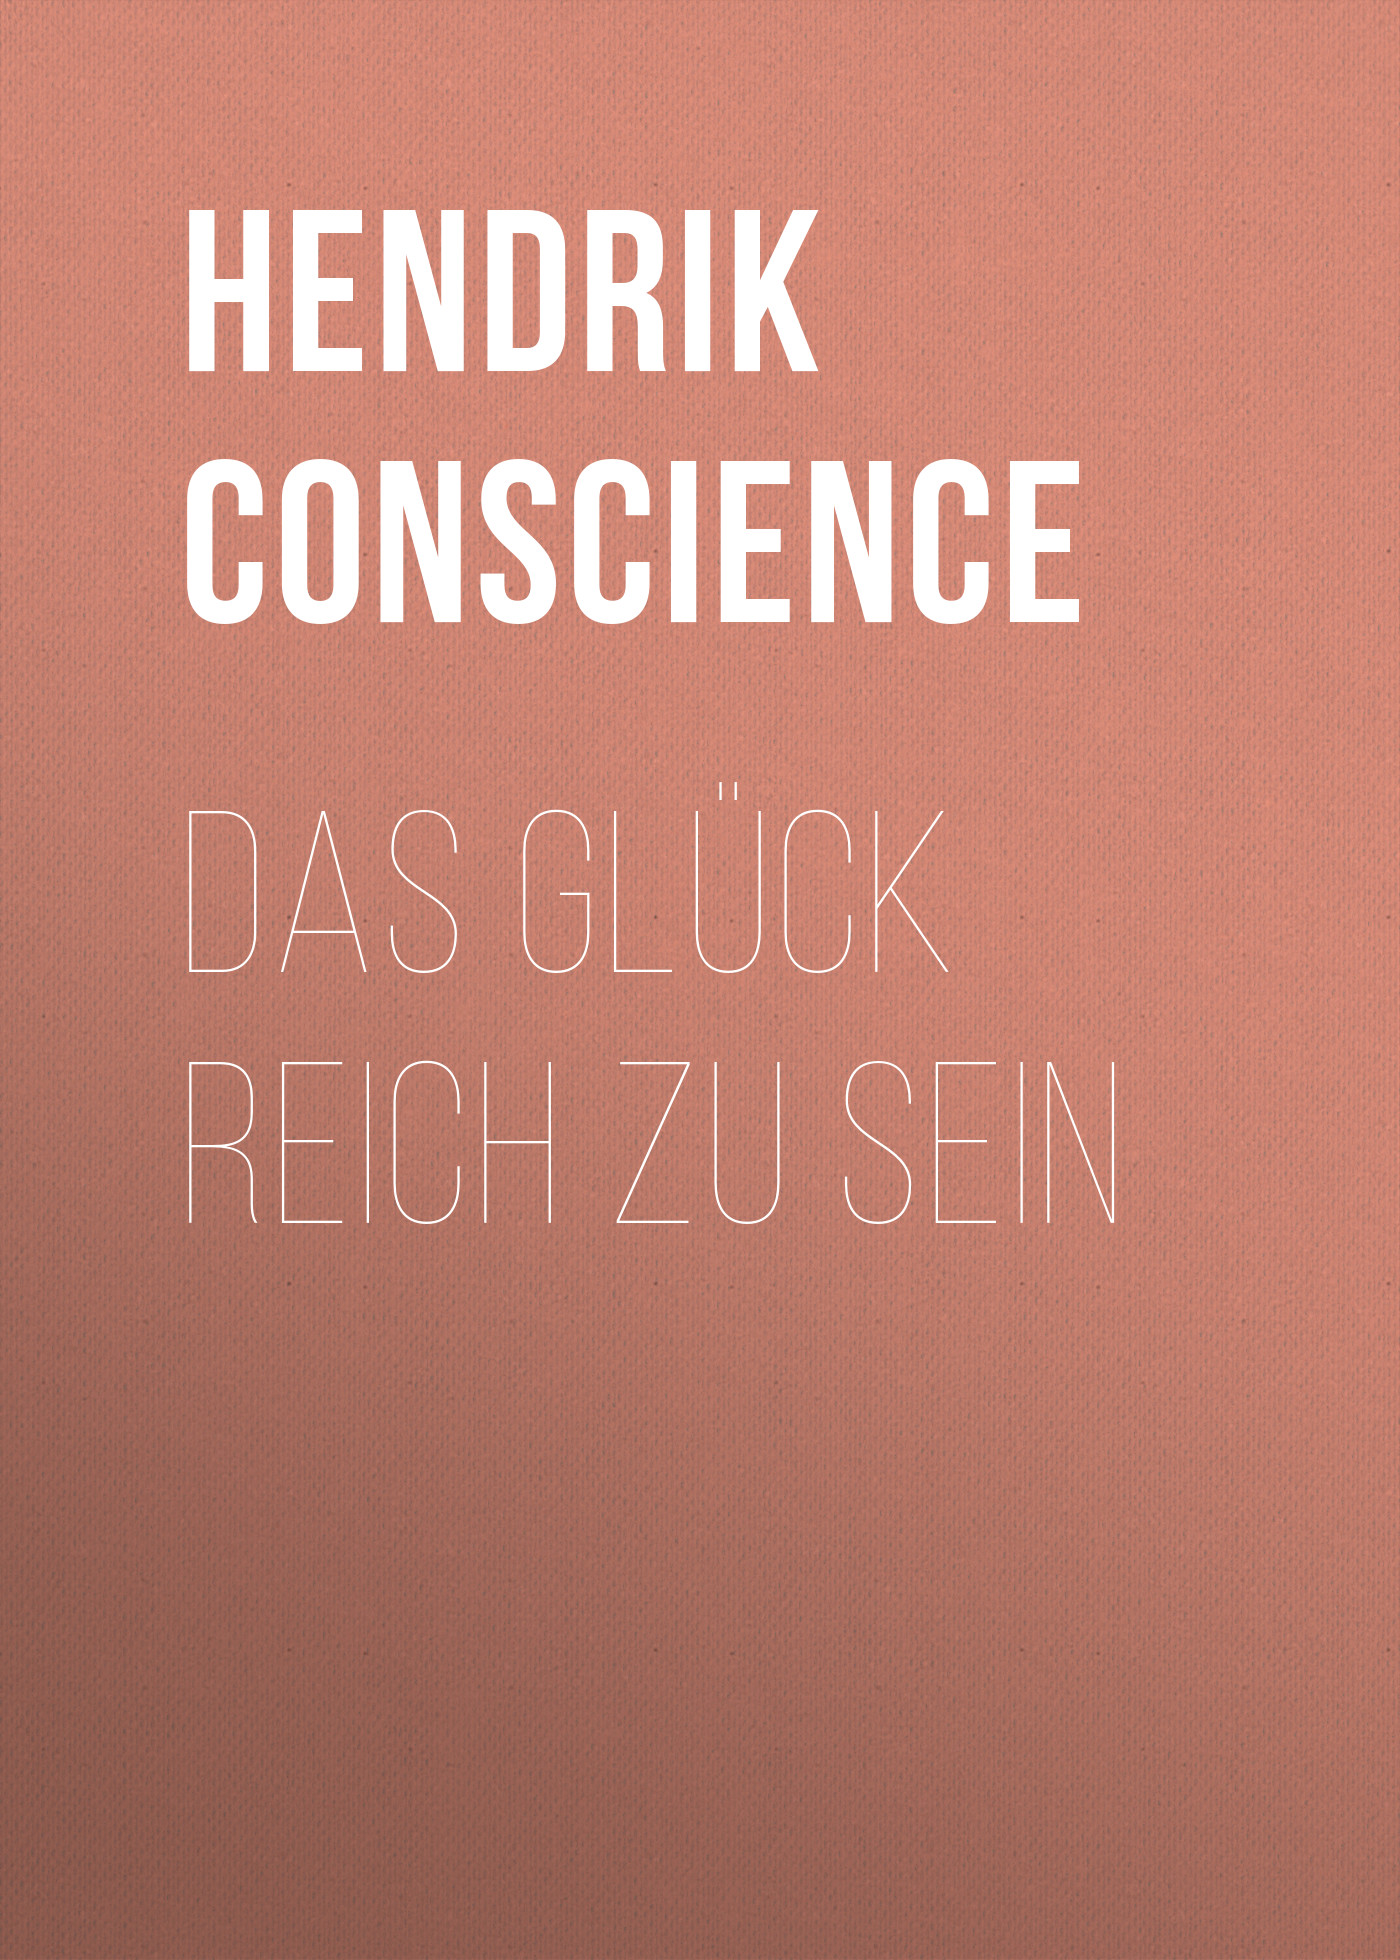 Книга Das Glück reich zu sein из серии , созданная Hendrik Conscience, может относится к жанру Зарубежная классика. Стоимость электронной книги Das Glück reich zu sein с идентификатором 48633420 составляет 0 руб.